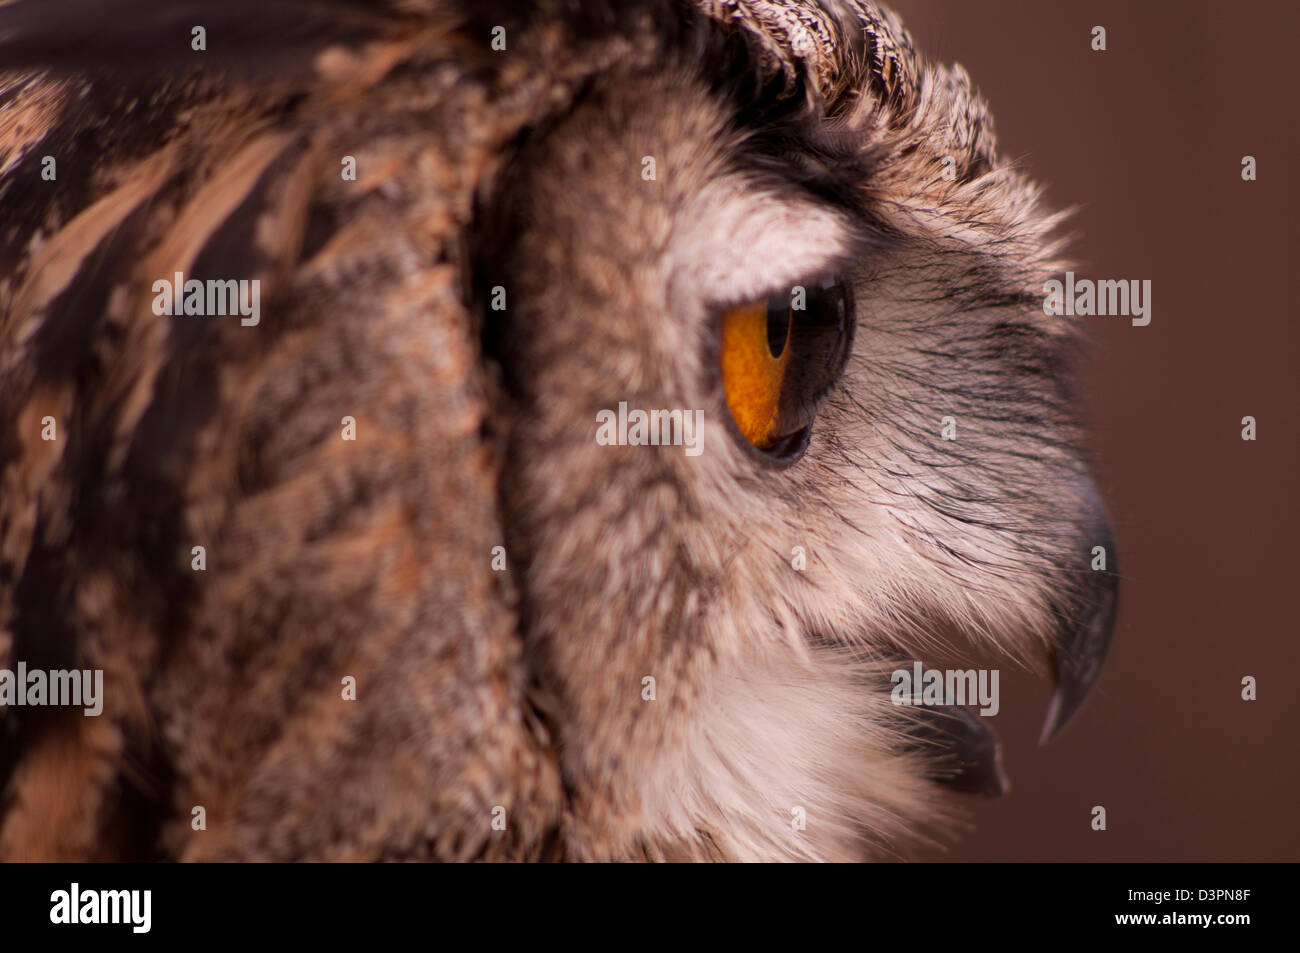 eagle-owl, gufo reale Stock Photo